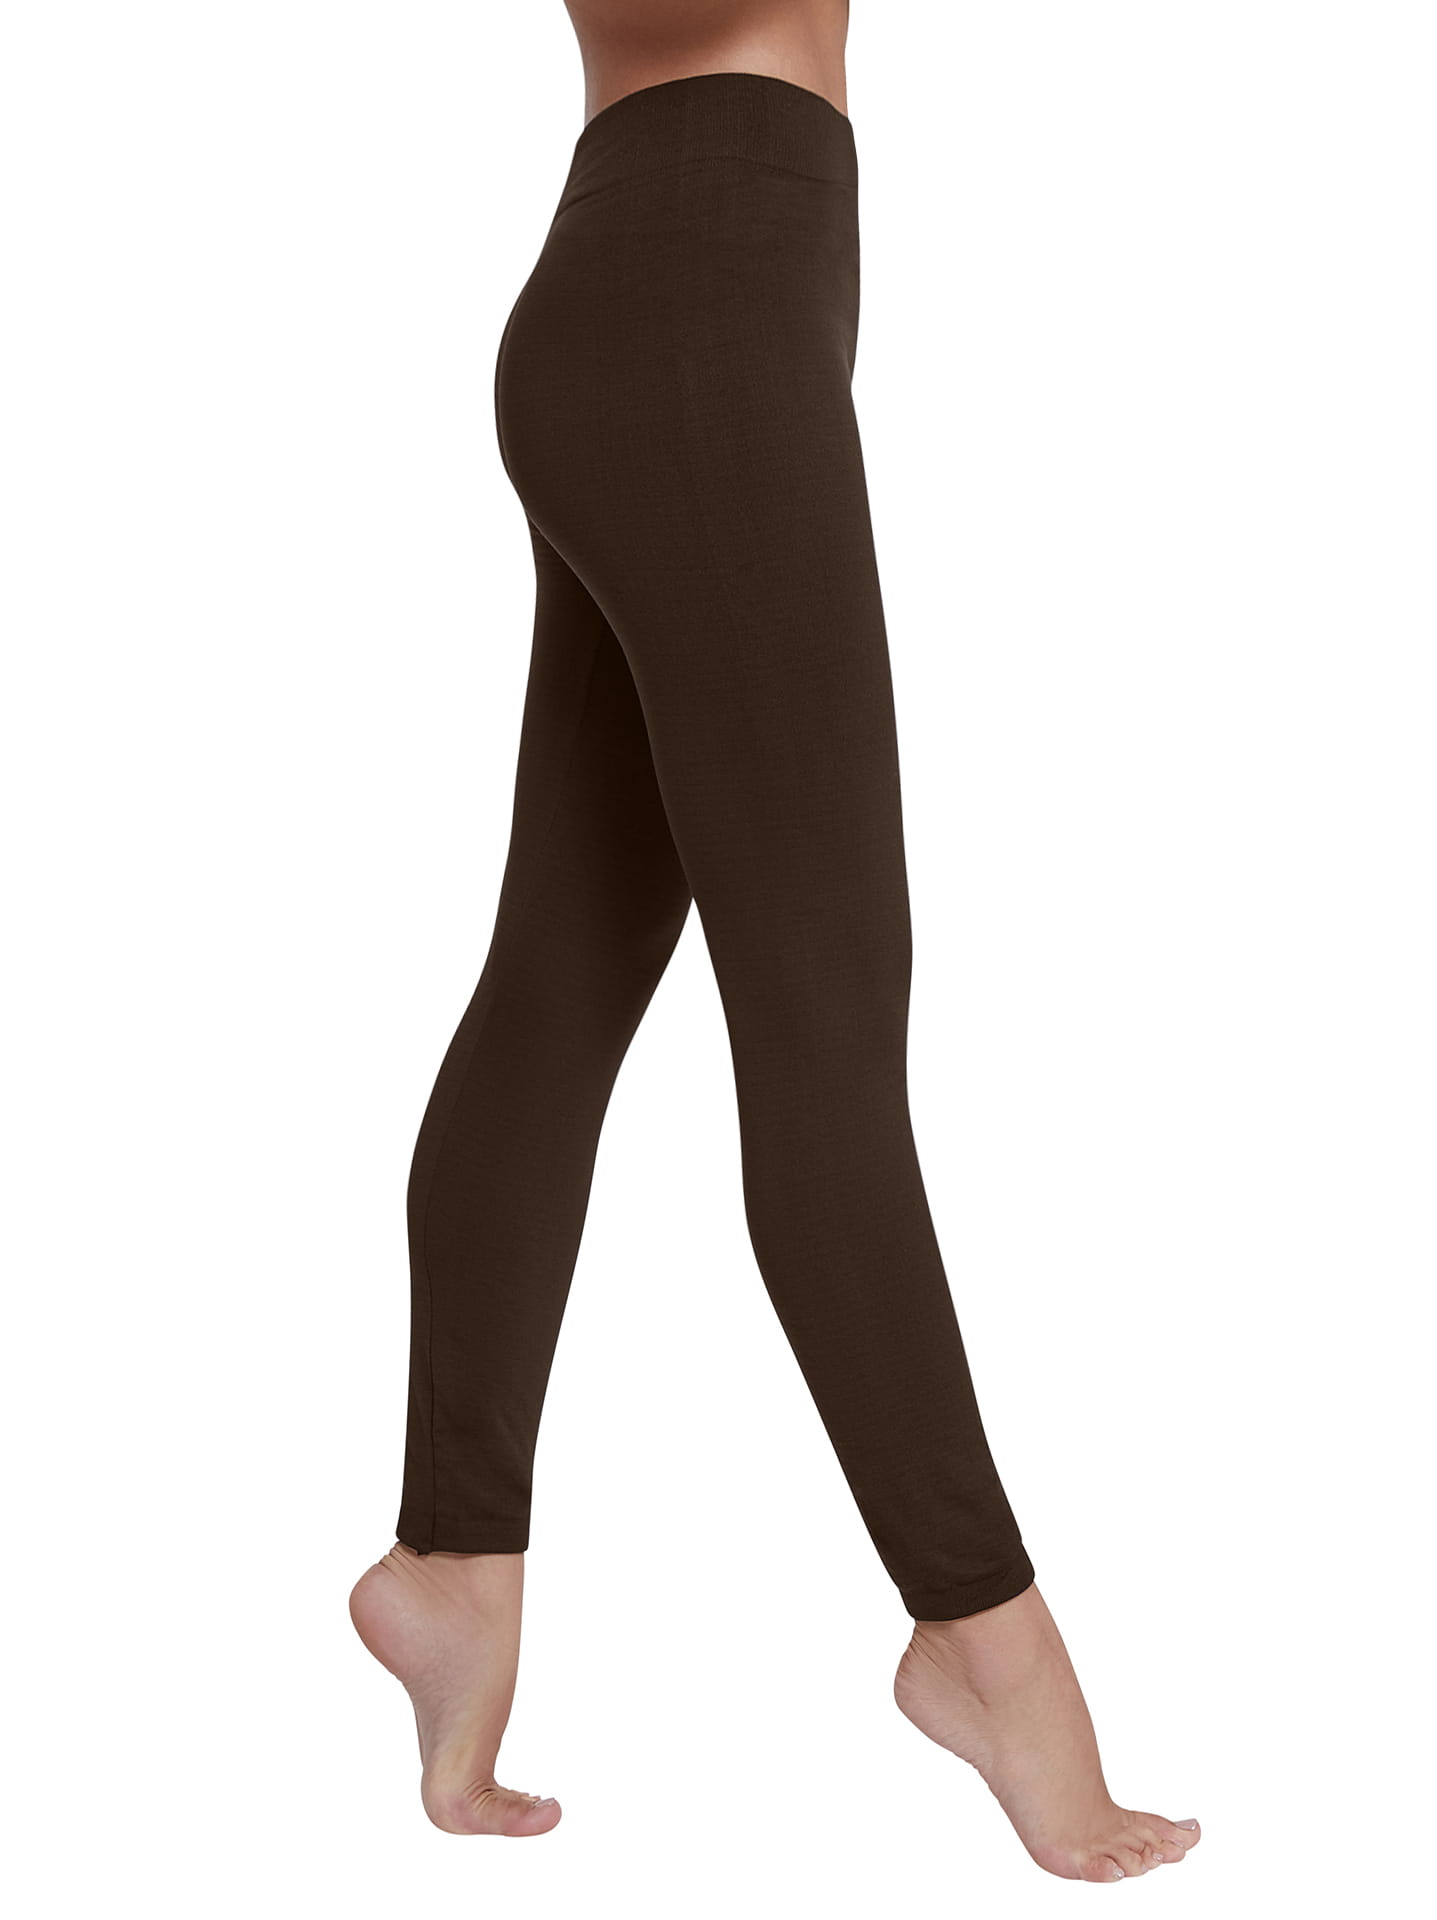 High waist thermal leggings curvy in dark brown, 4.99€